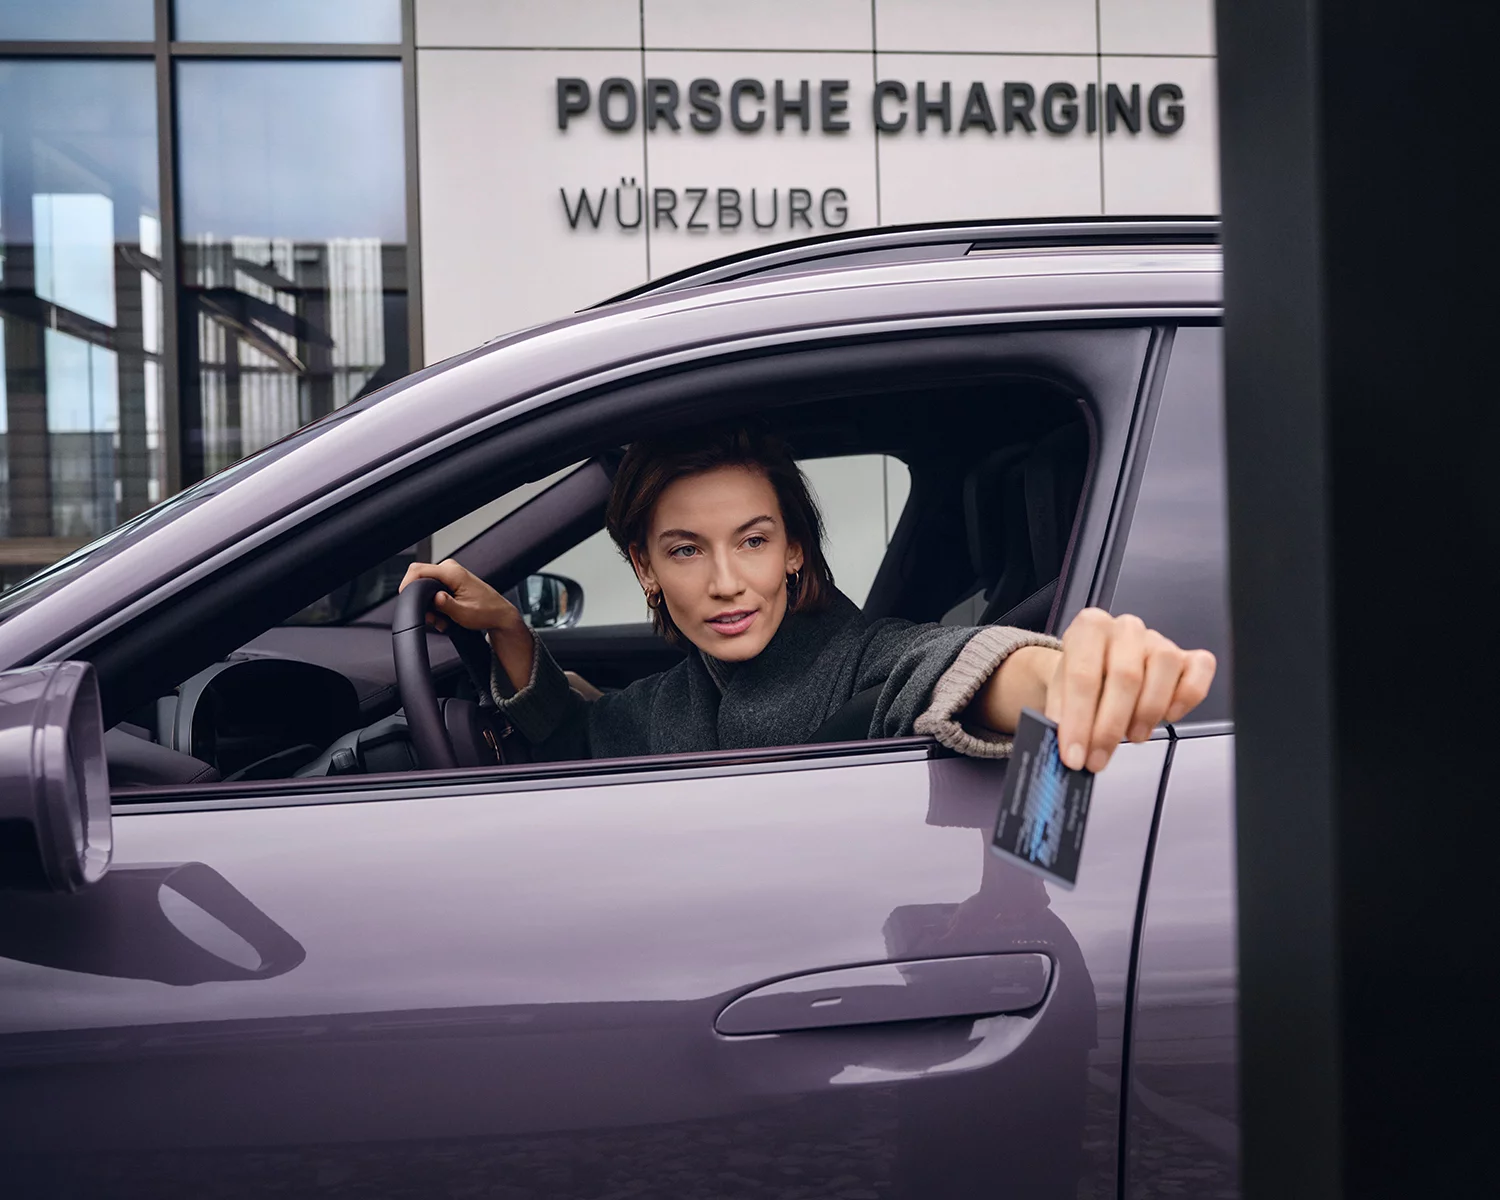 Porsche Charging Lounge 11 by Benjamin PICHELMANN